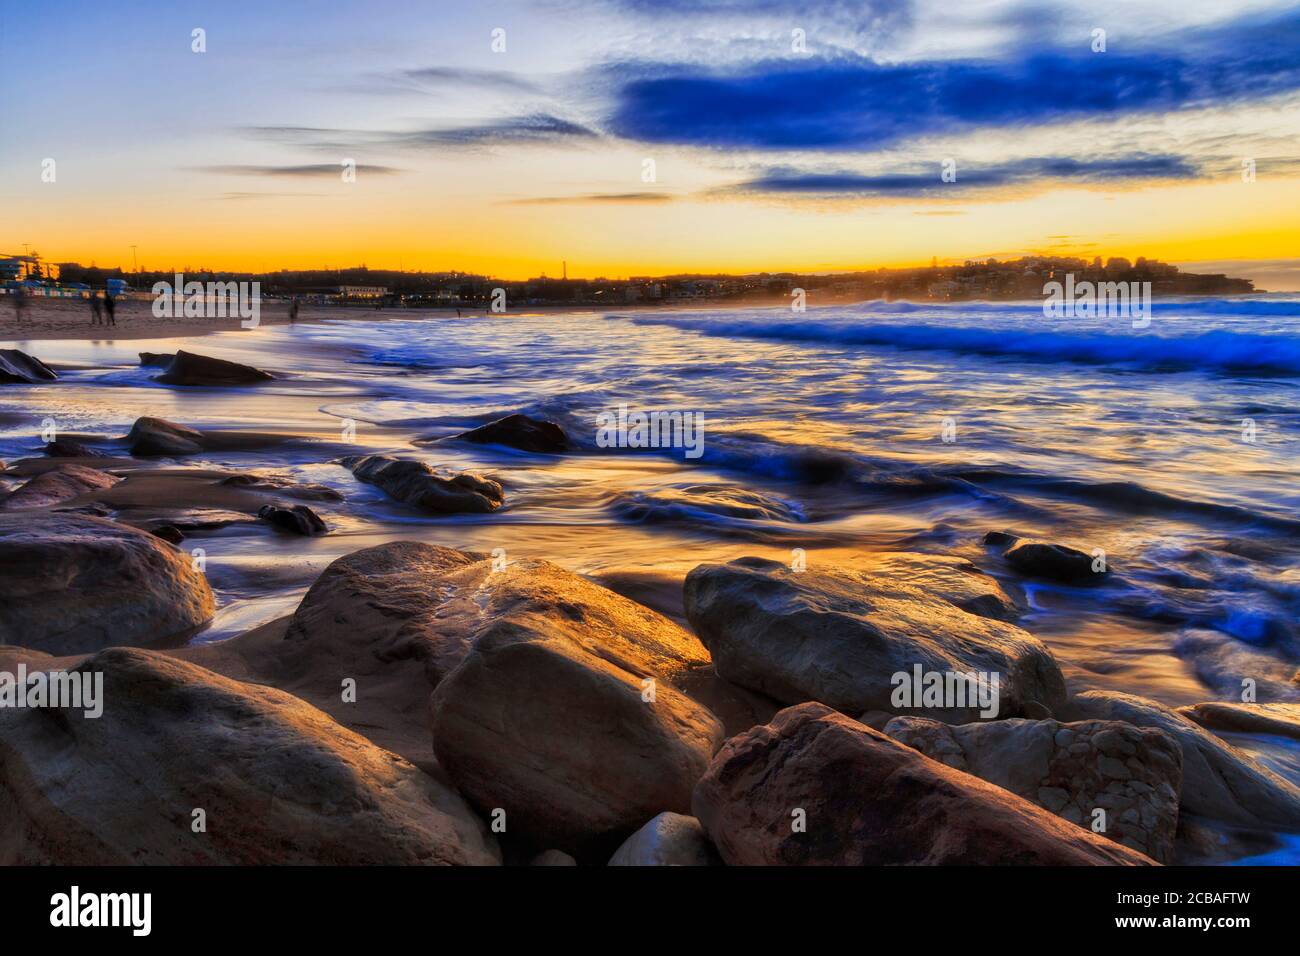 Alba sulla famosa spiaggia Bondi di Sydney sulla costa del Pacifico di fronte alla spiaggia di sabbia e rocce in calda luce del sole. Foto Stock